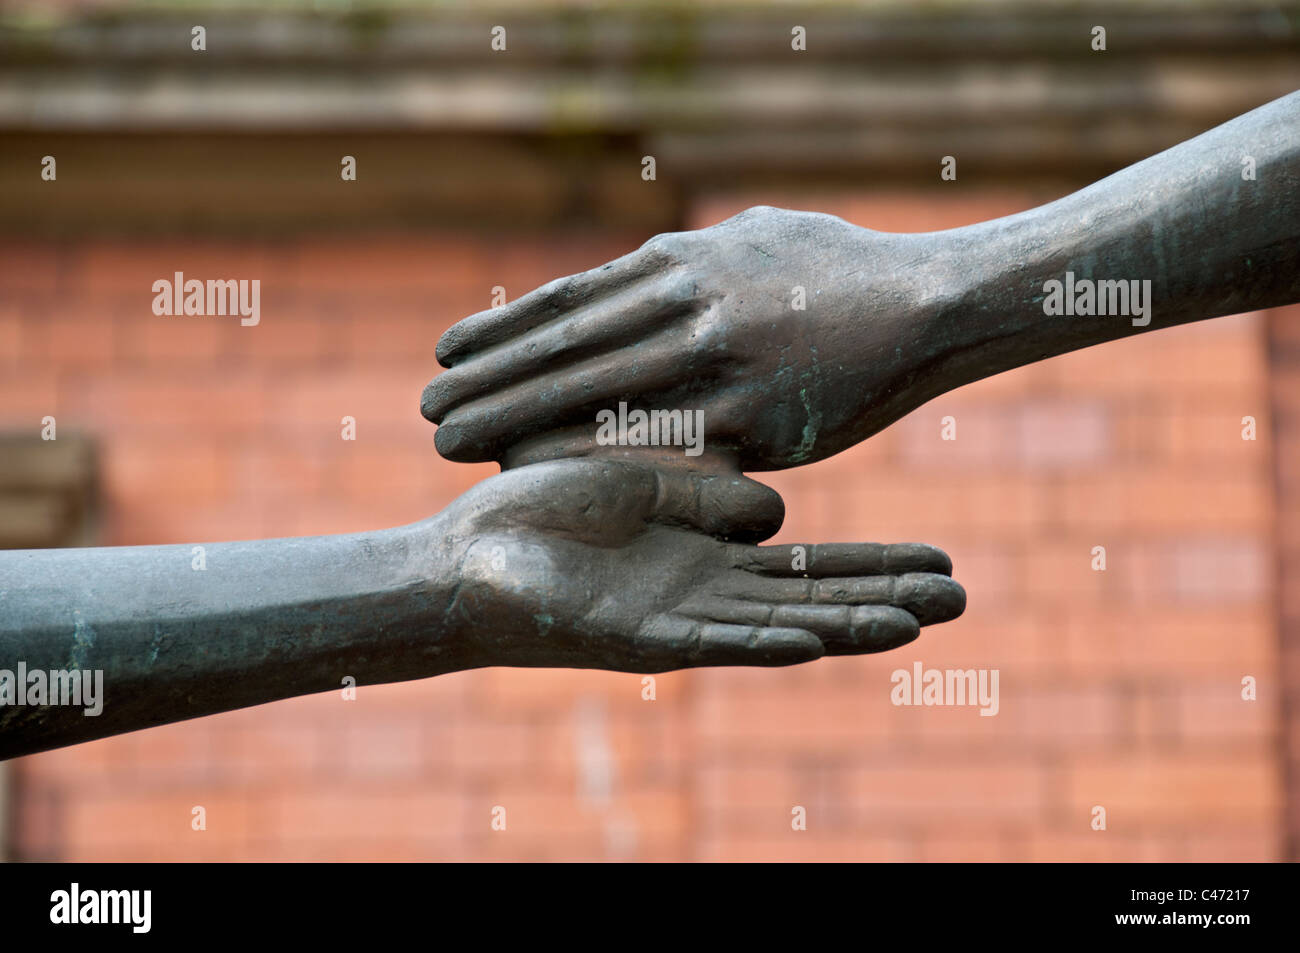 Dettaglio da 'La statua Chartist', da Stephen Broadbent. Hyde Town Hall, Hyde, Tameside, Manchester, Inghilterra, Regno Unito Foto Stock